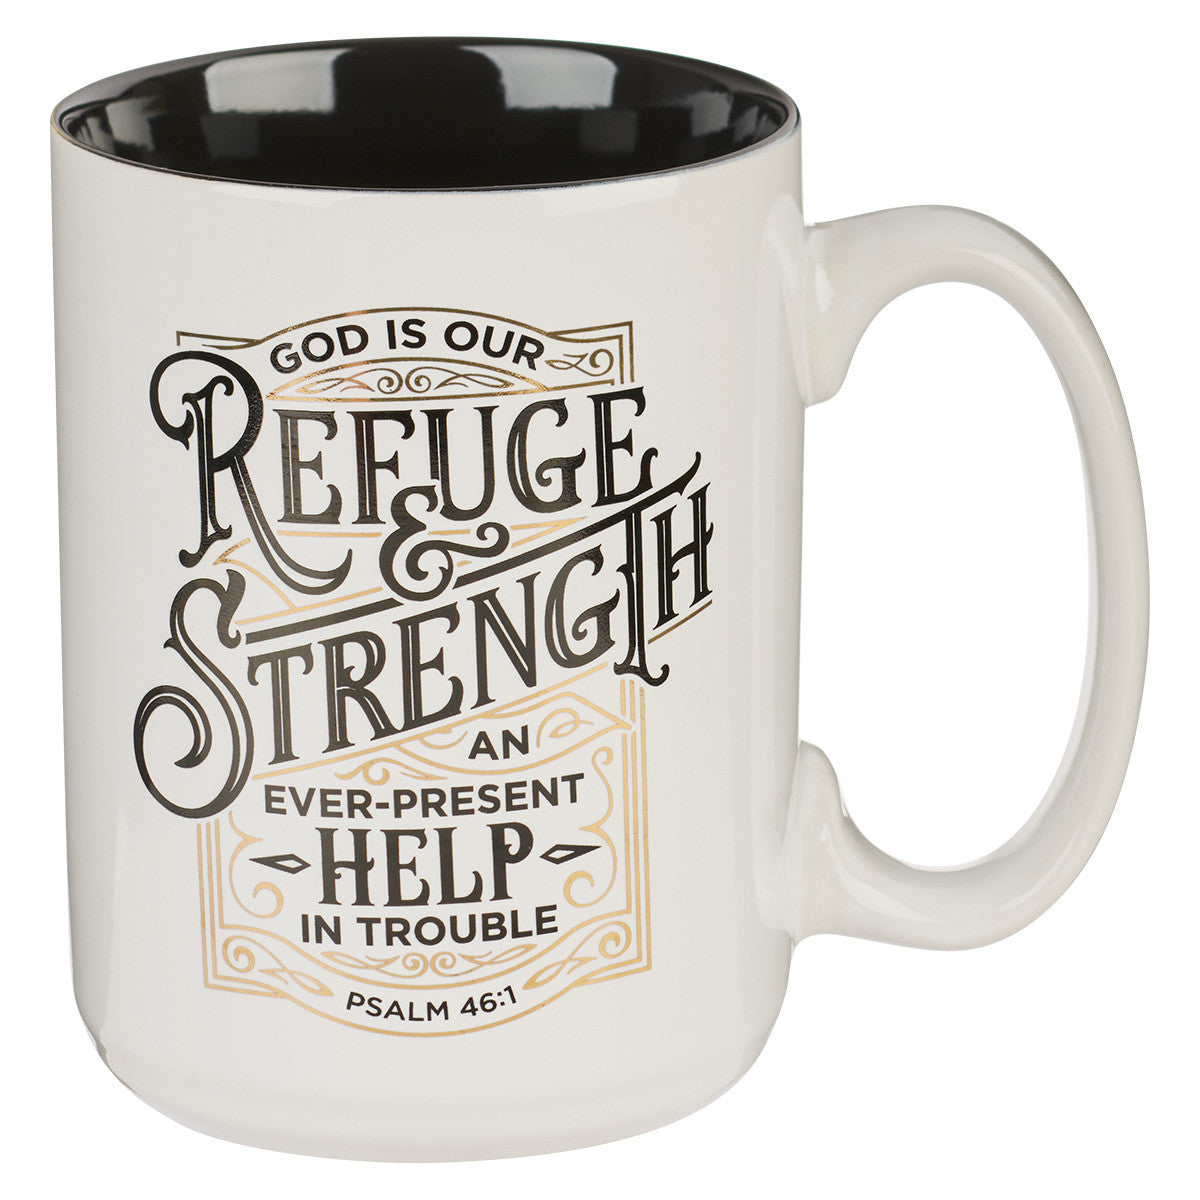 Refuge and Strength Mug - Psalm 46:1